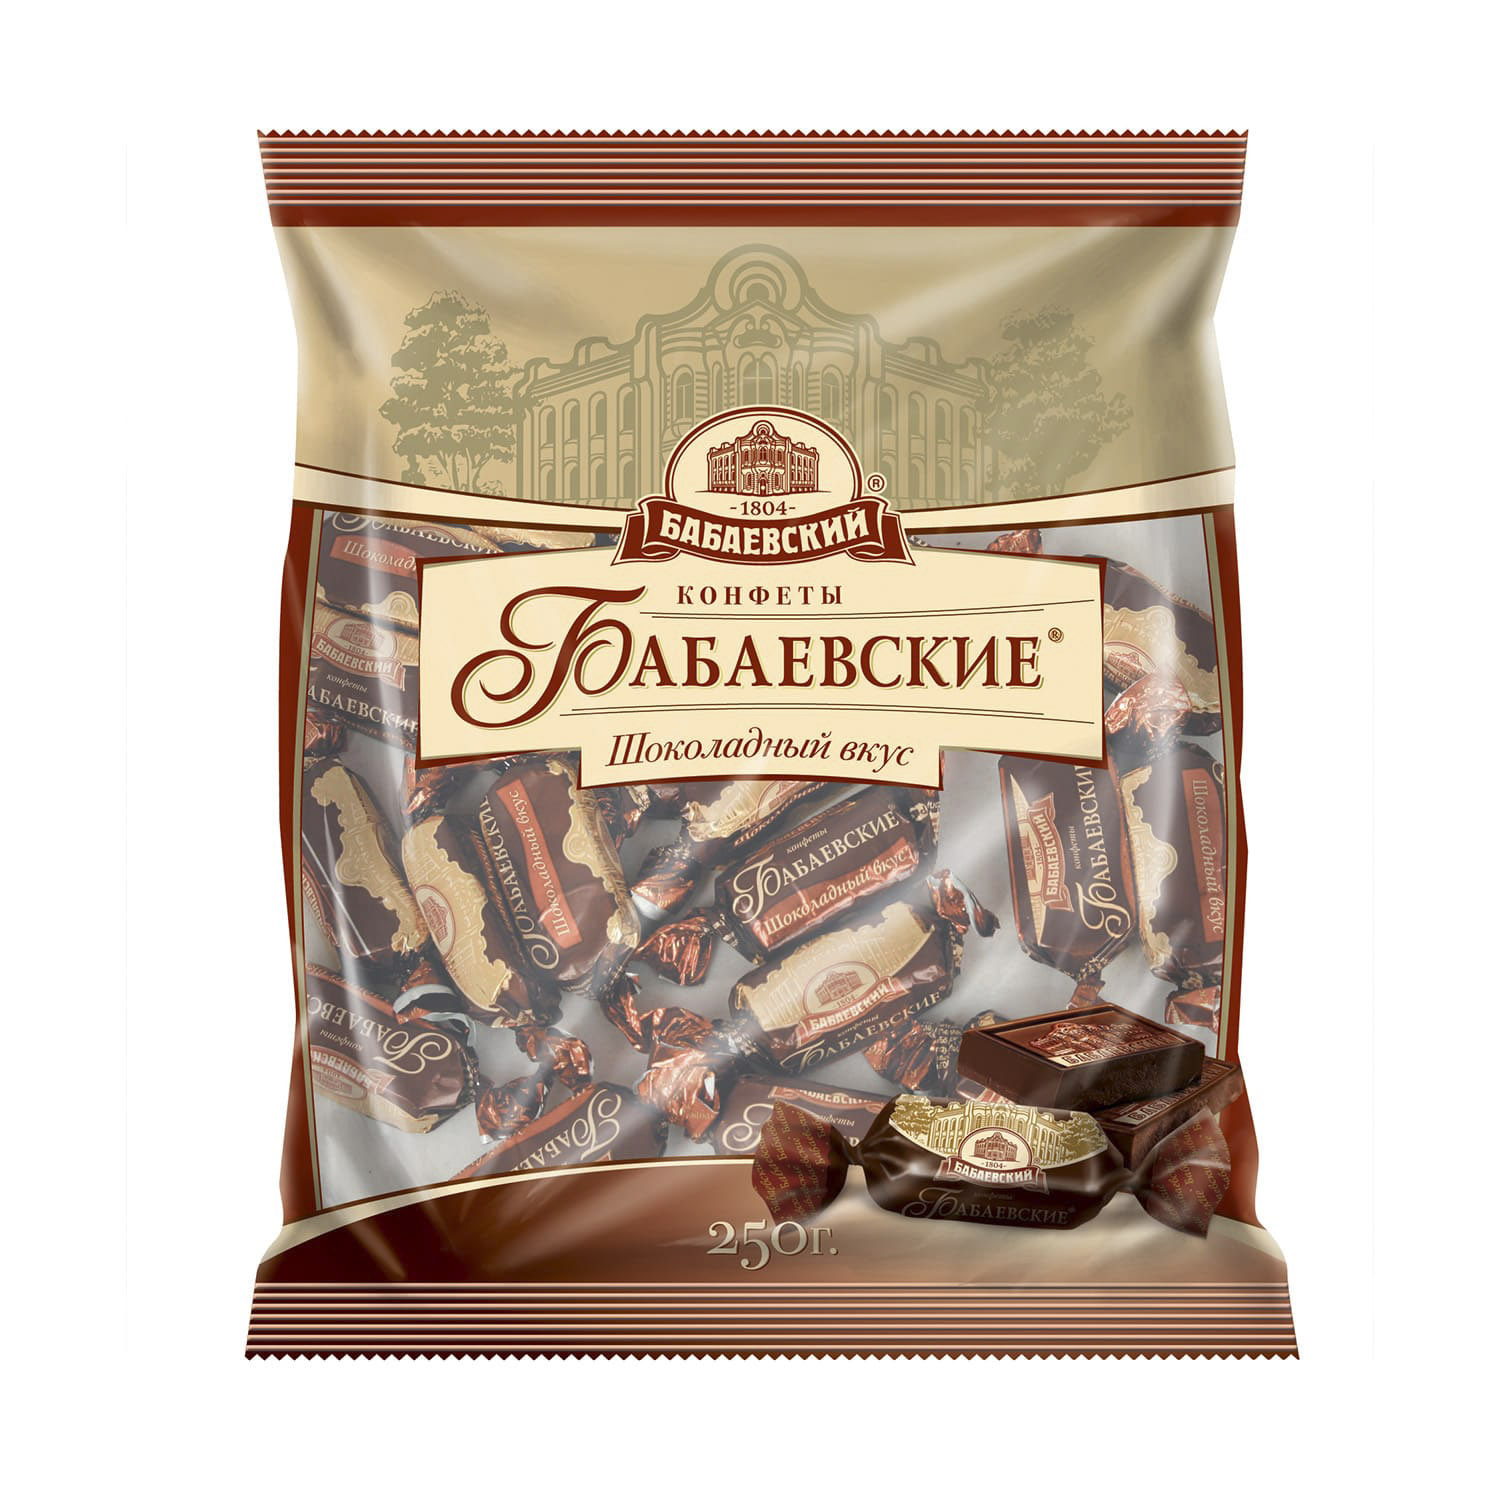 Конфеты Бабаевские шоколадный вкус 250 г конфеты бабаевские вес шок вк объединенные кондитеры кг